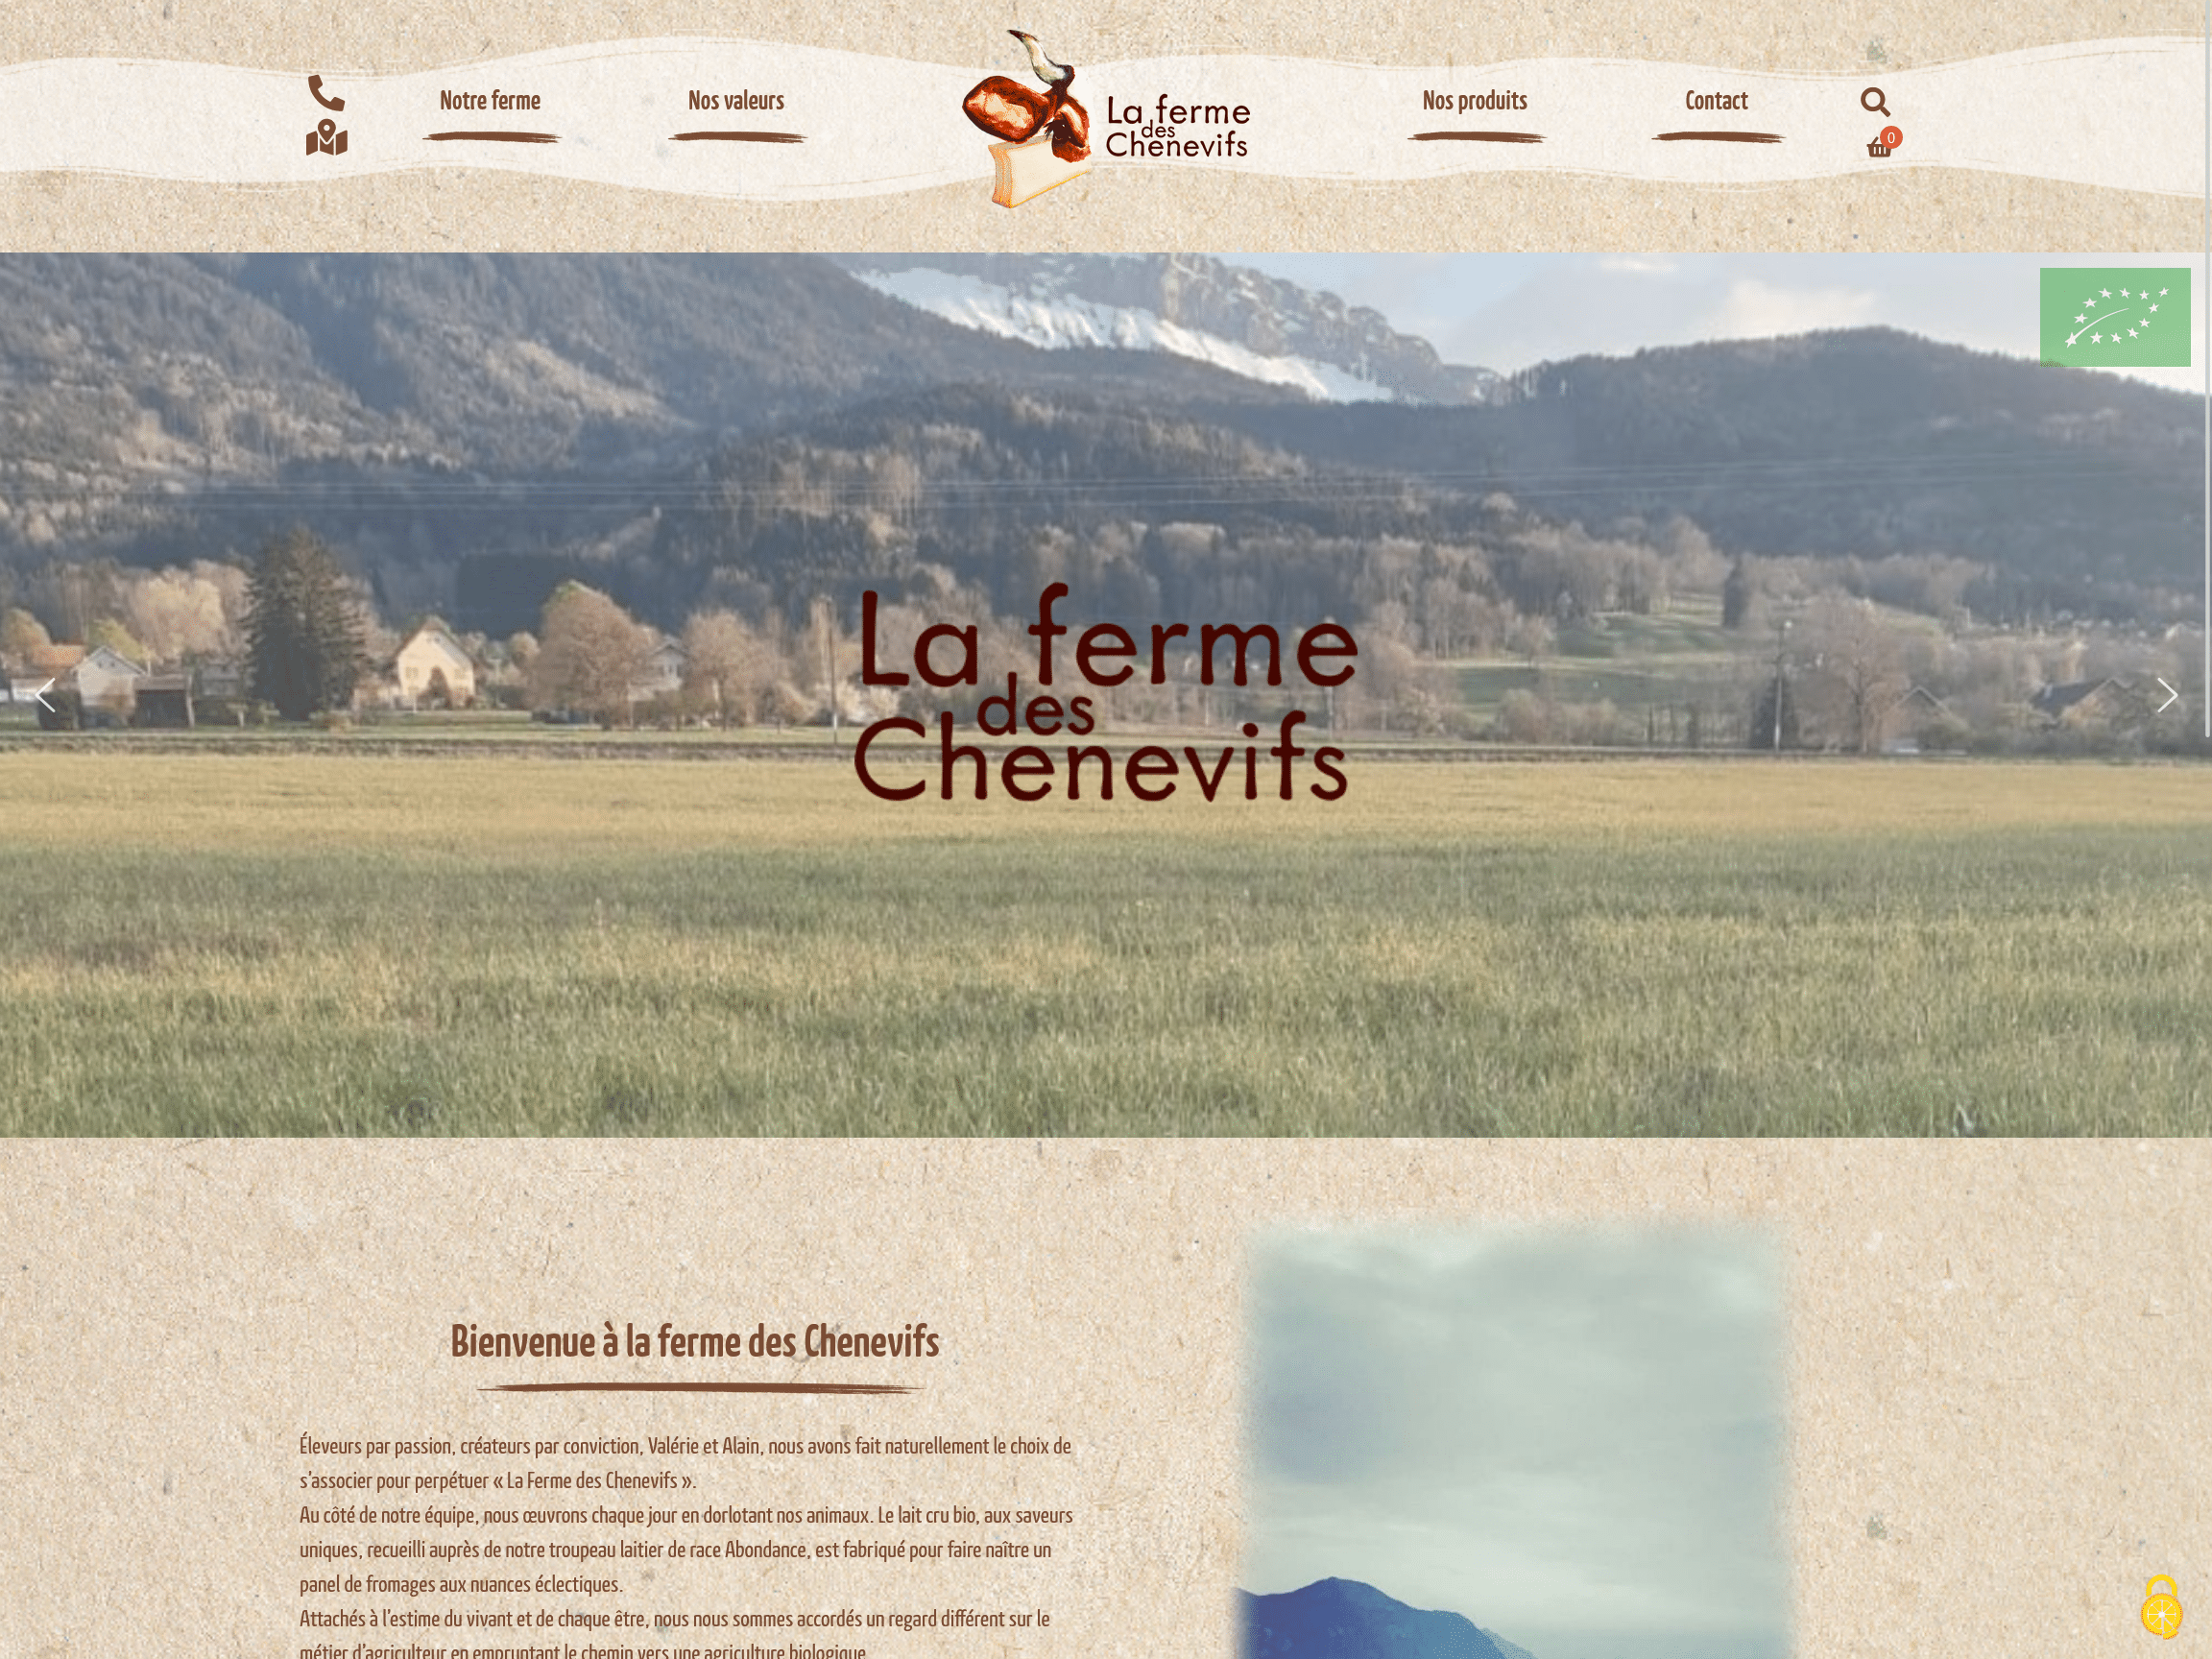 La ferme des Chenevifs - Saint Laurent 74 - vente de fromage à la ferme et agriculteur passionnes